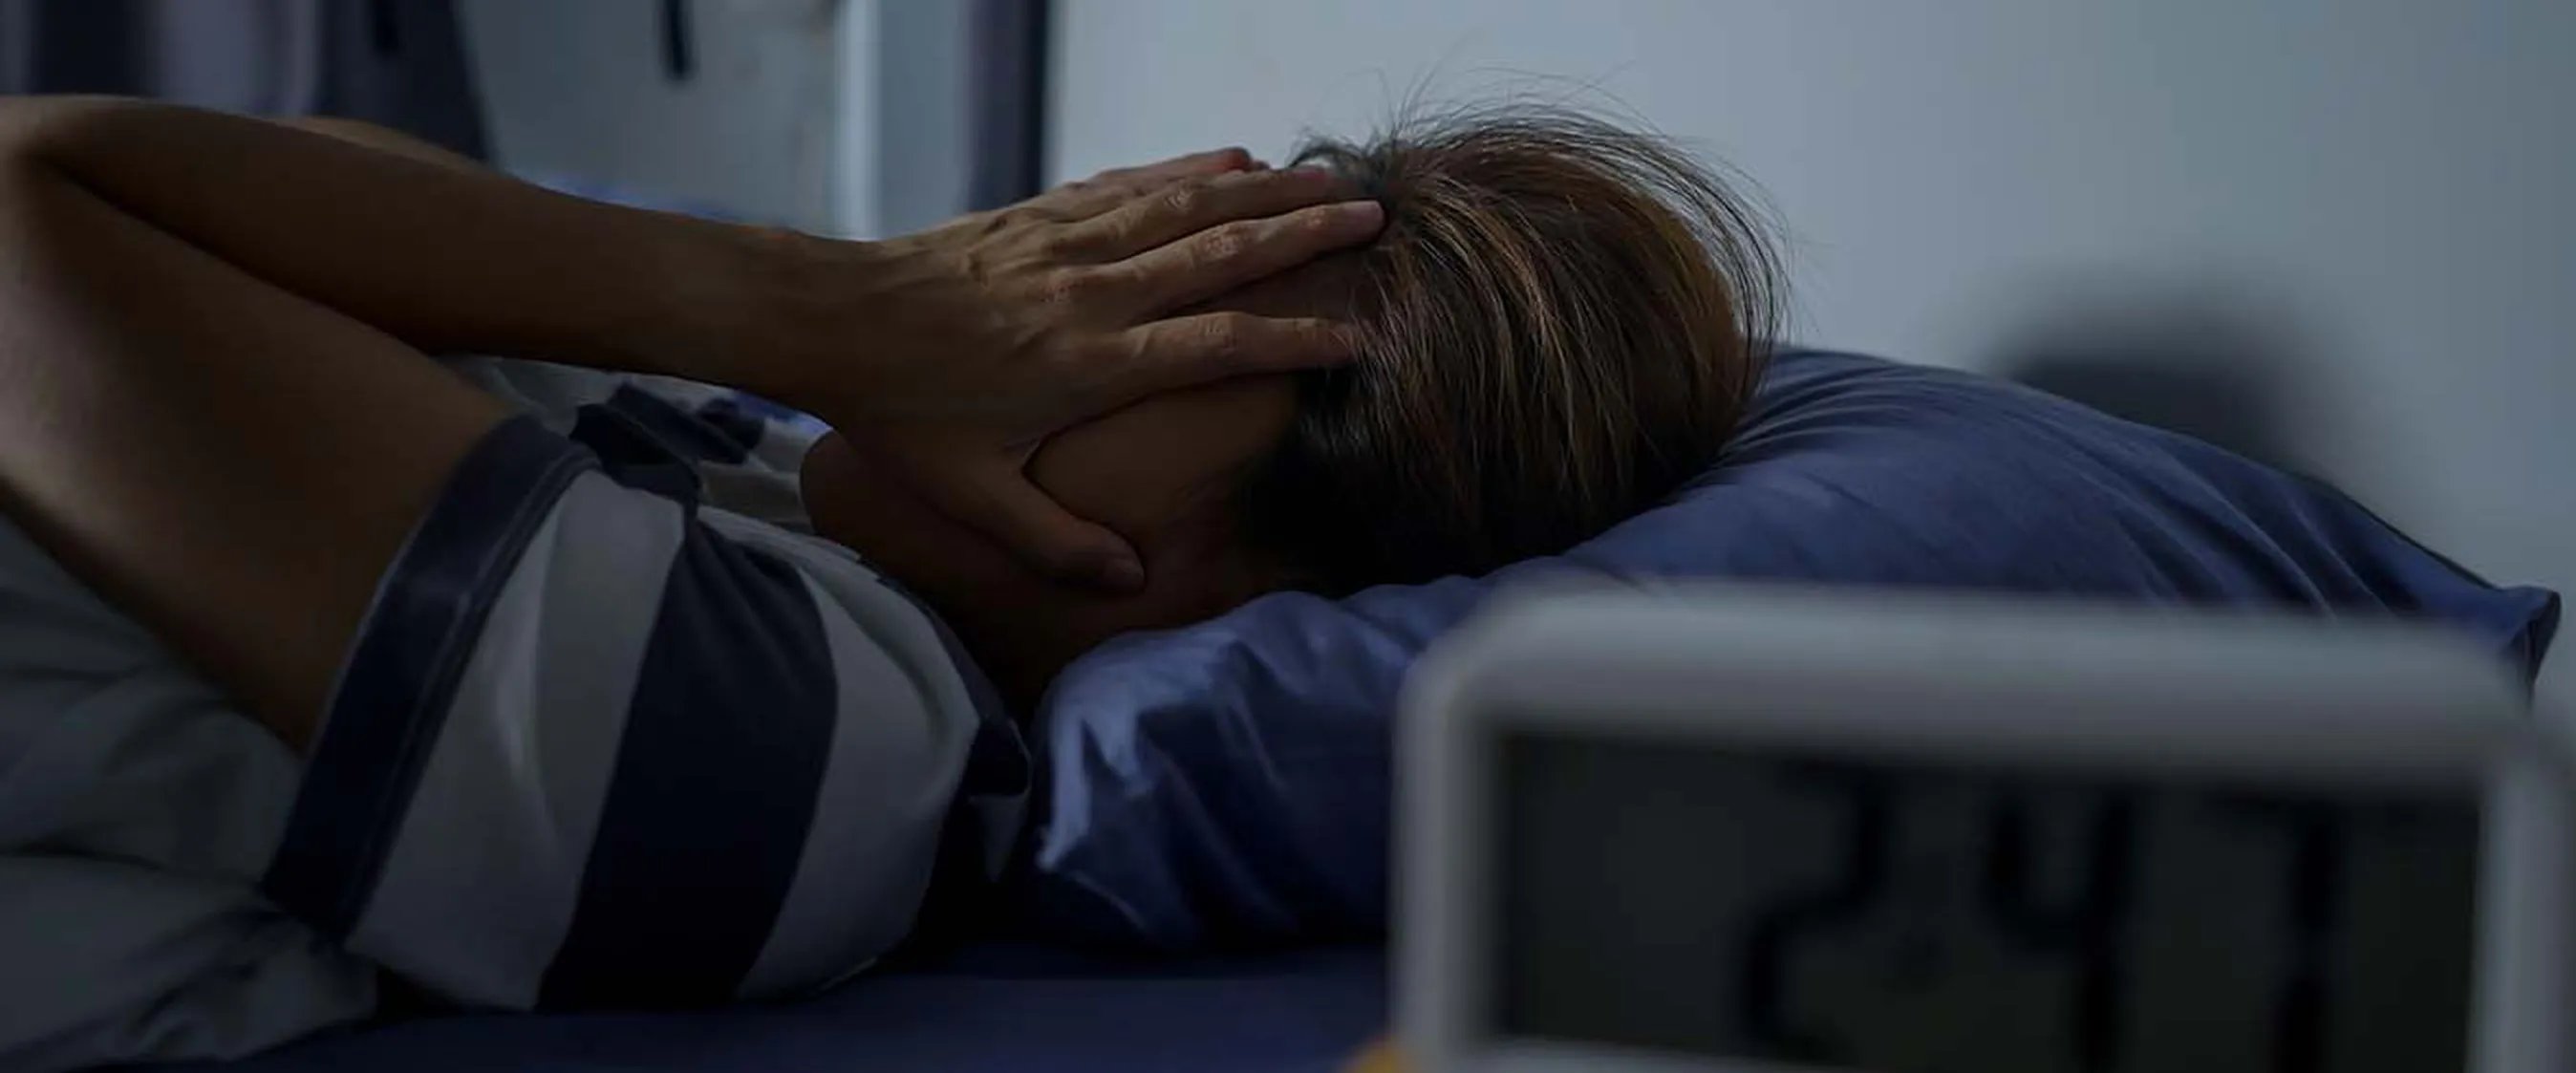 Slecht slapen: wat kan ik er tegen doen?